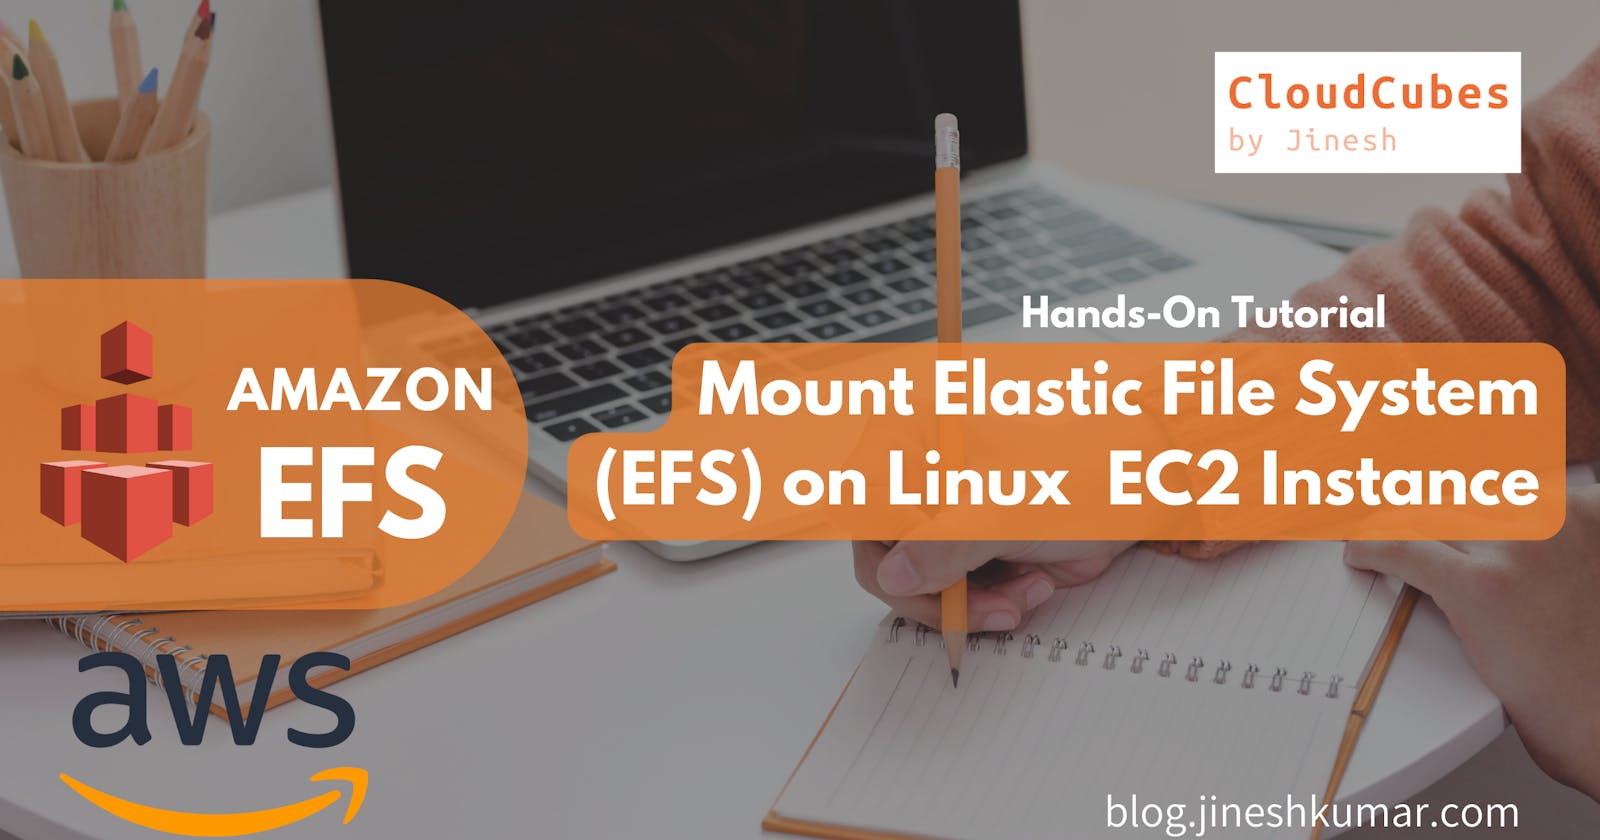 Mount Elastic File System (EFS) on EC2 Instance (Hands-On)